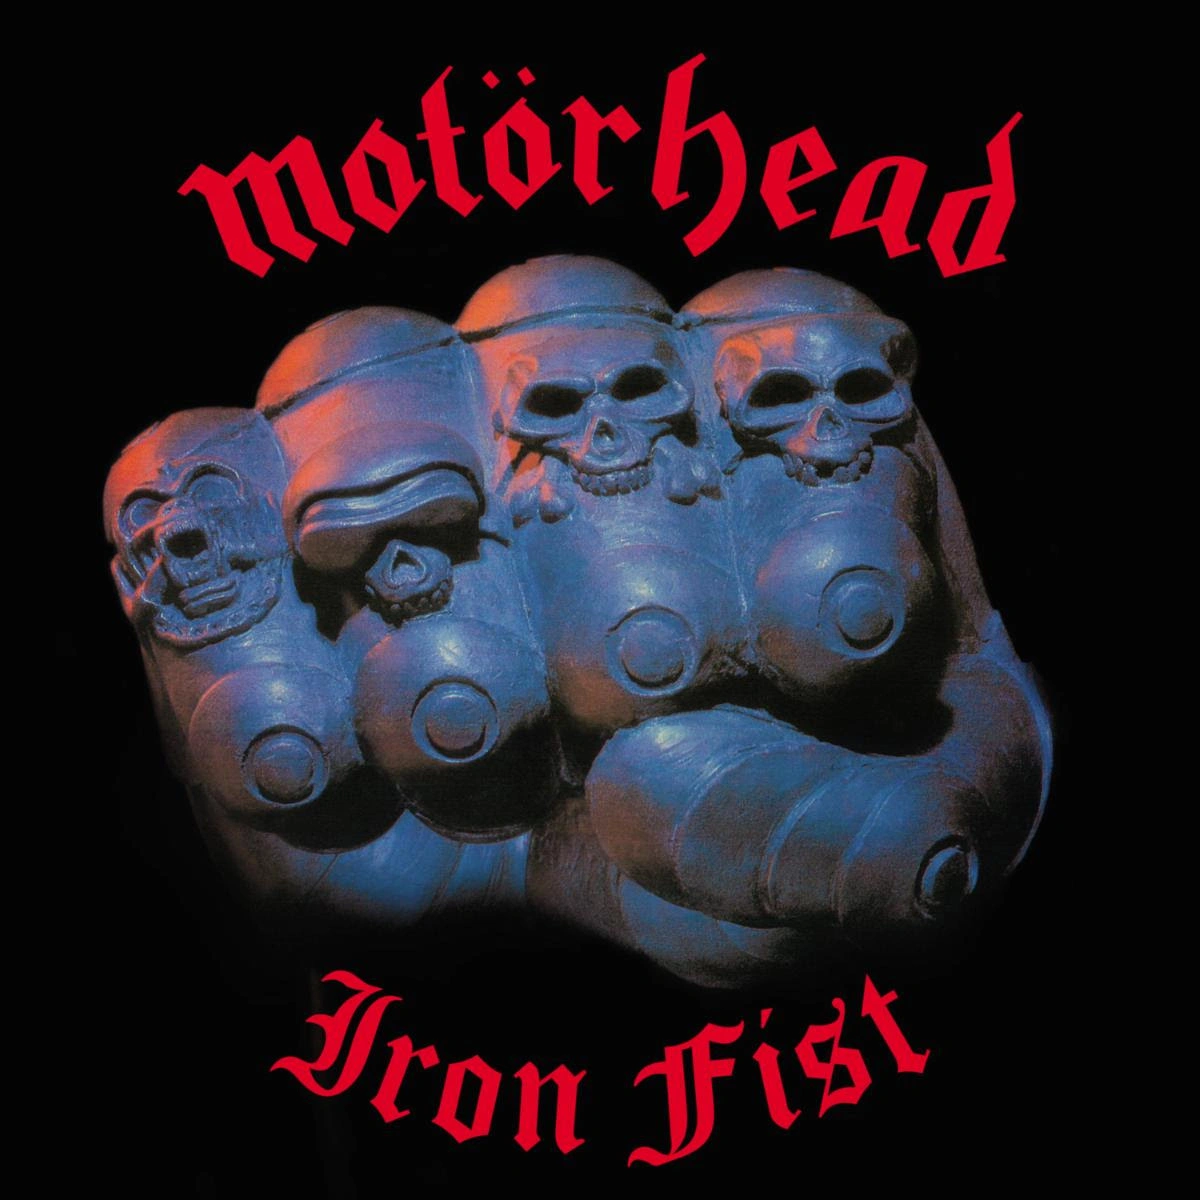 Capa da edição comemorativa de Iron Fist